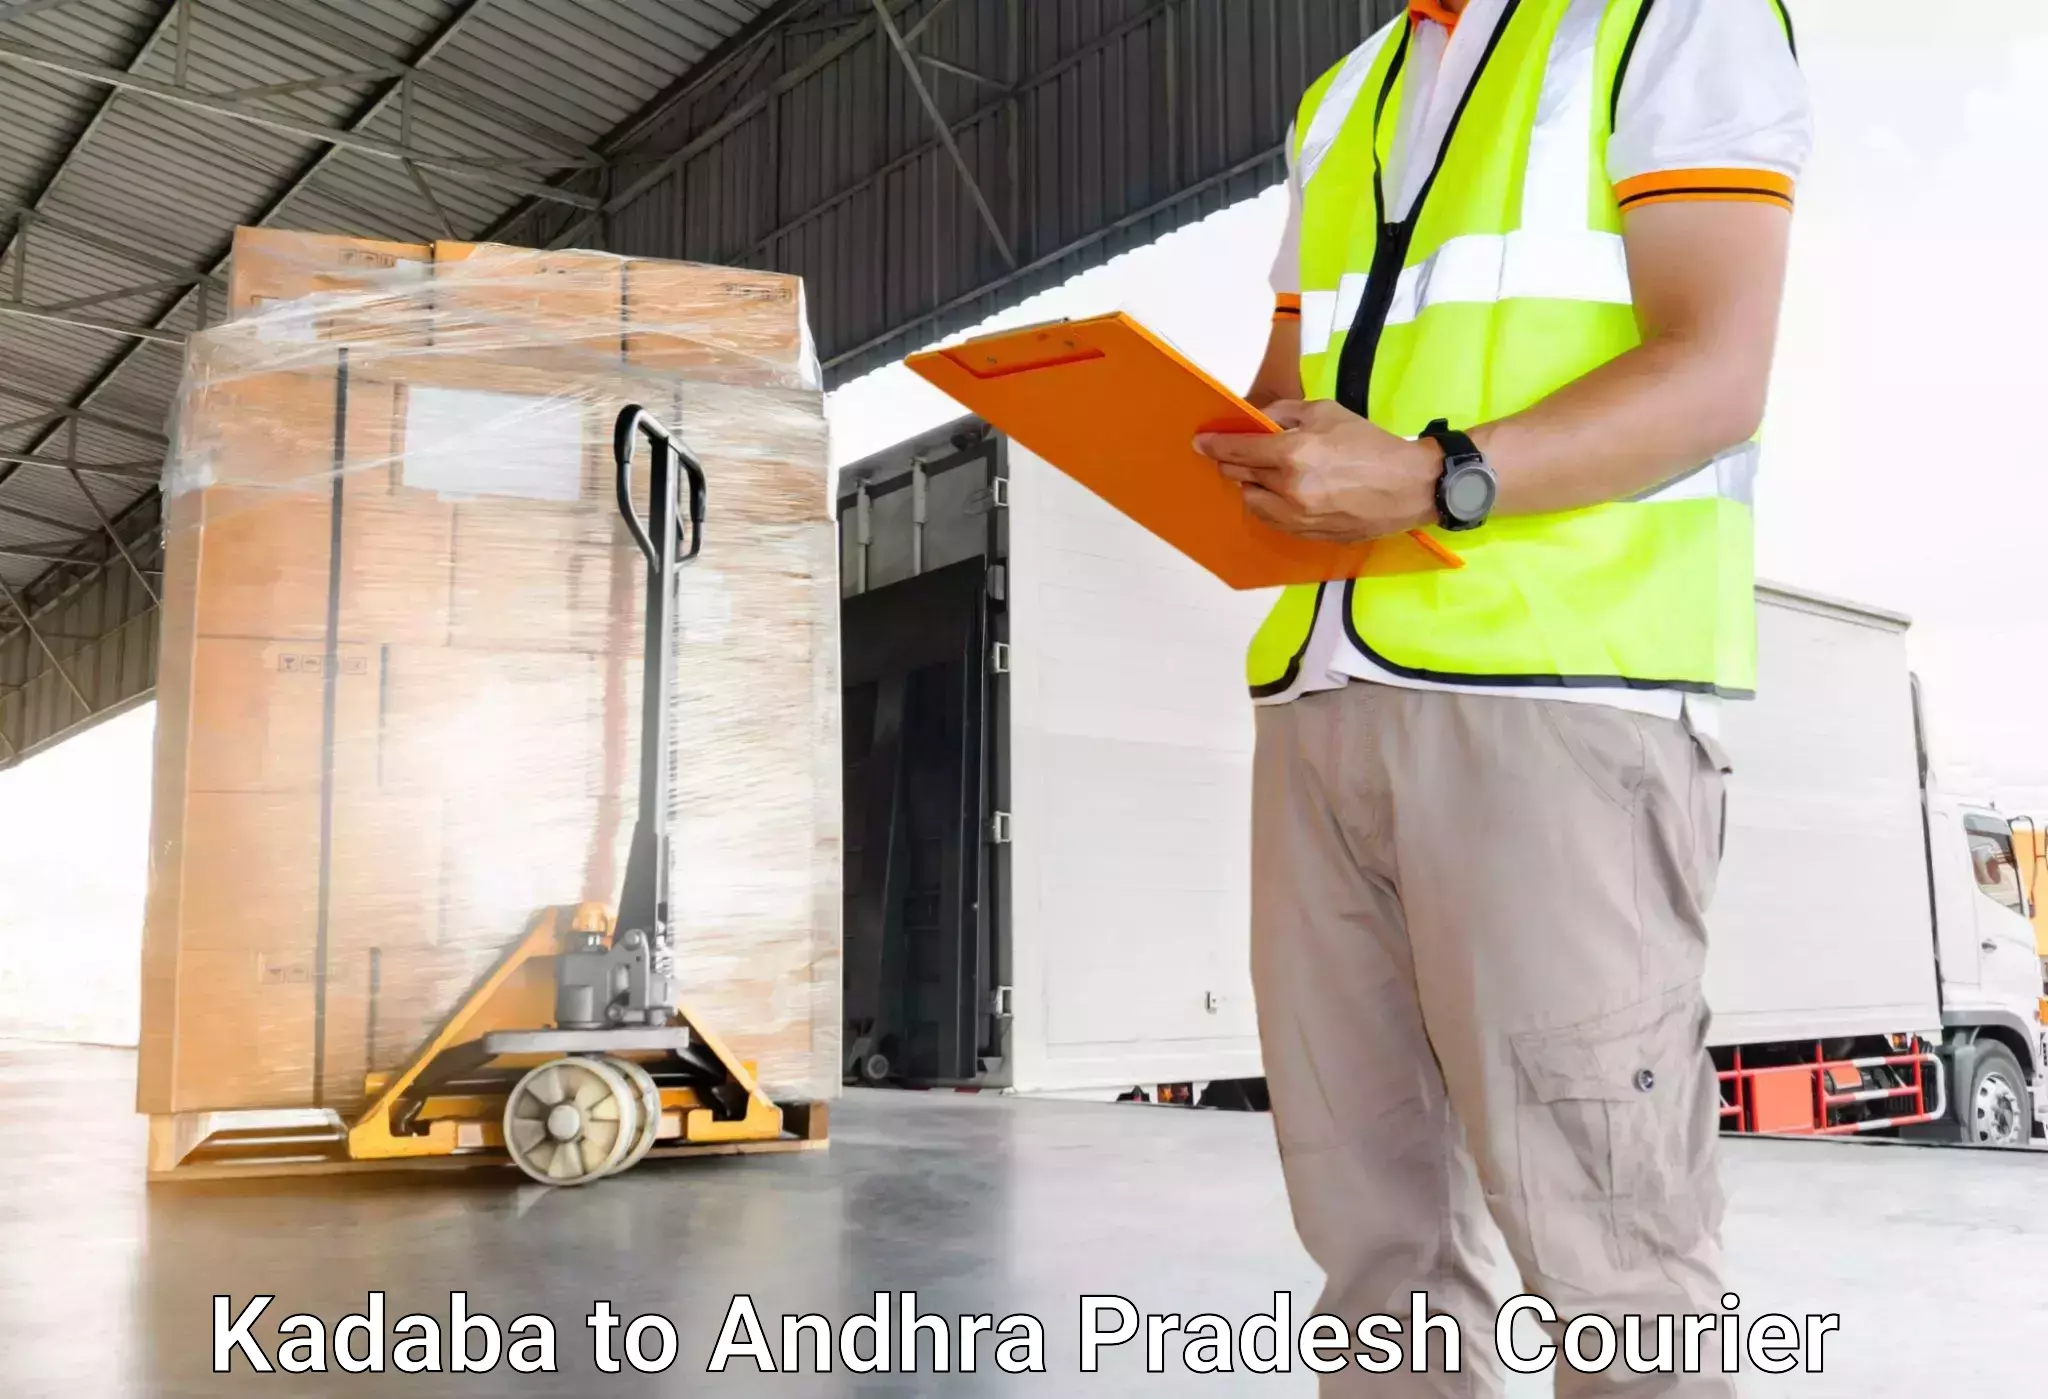 Hassle-free luggage shipping Kadaba to Visakhapatnam Port